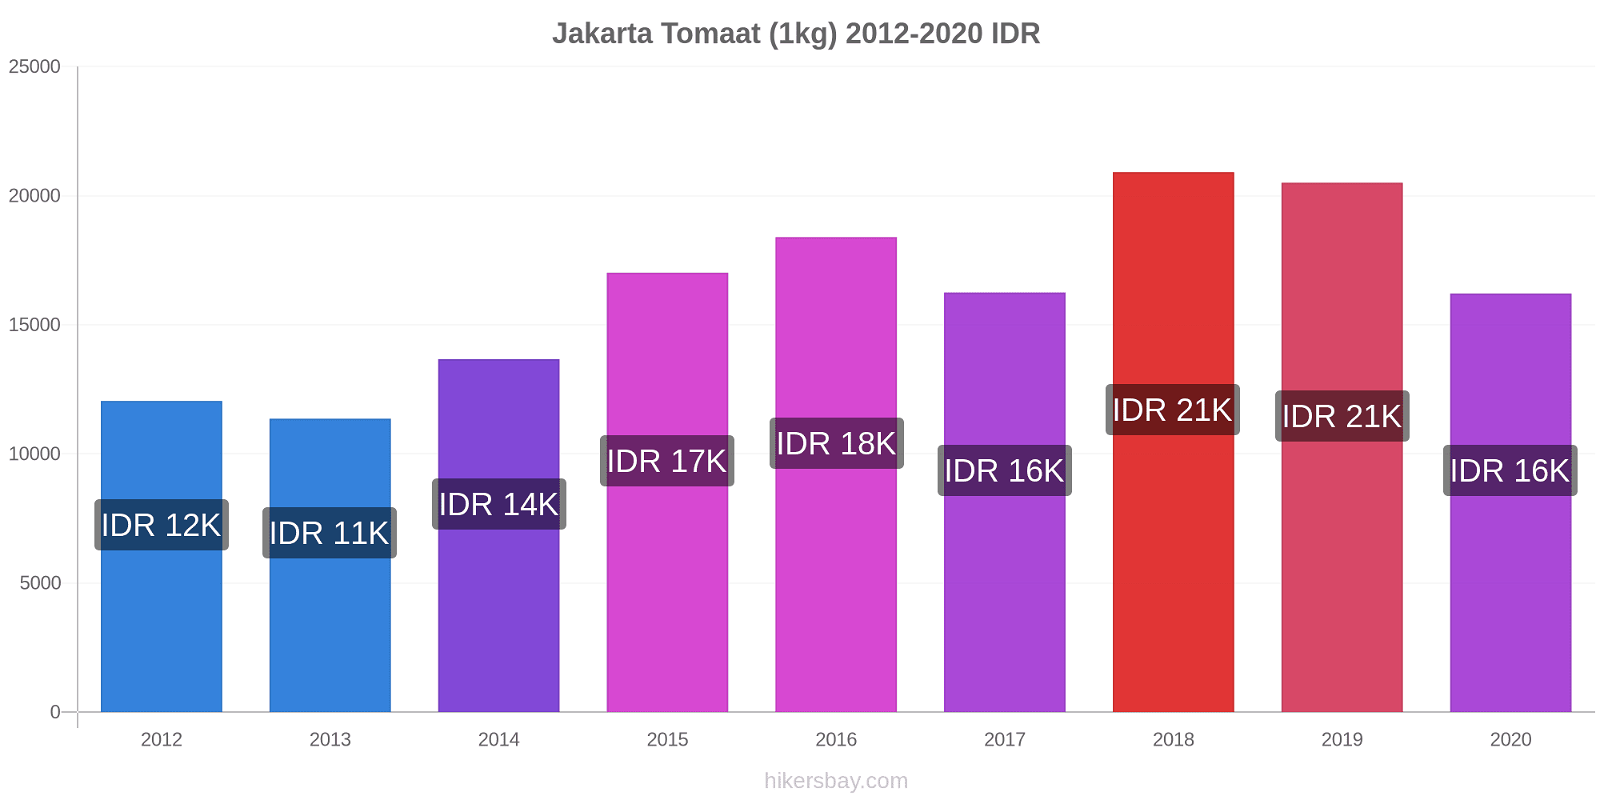 Jakarta prijswijzigingen Tomaat (1kg) hikersbay.com